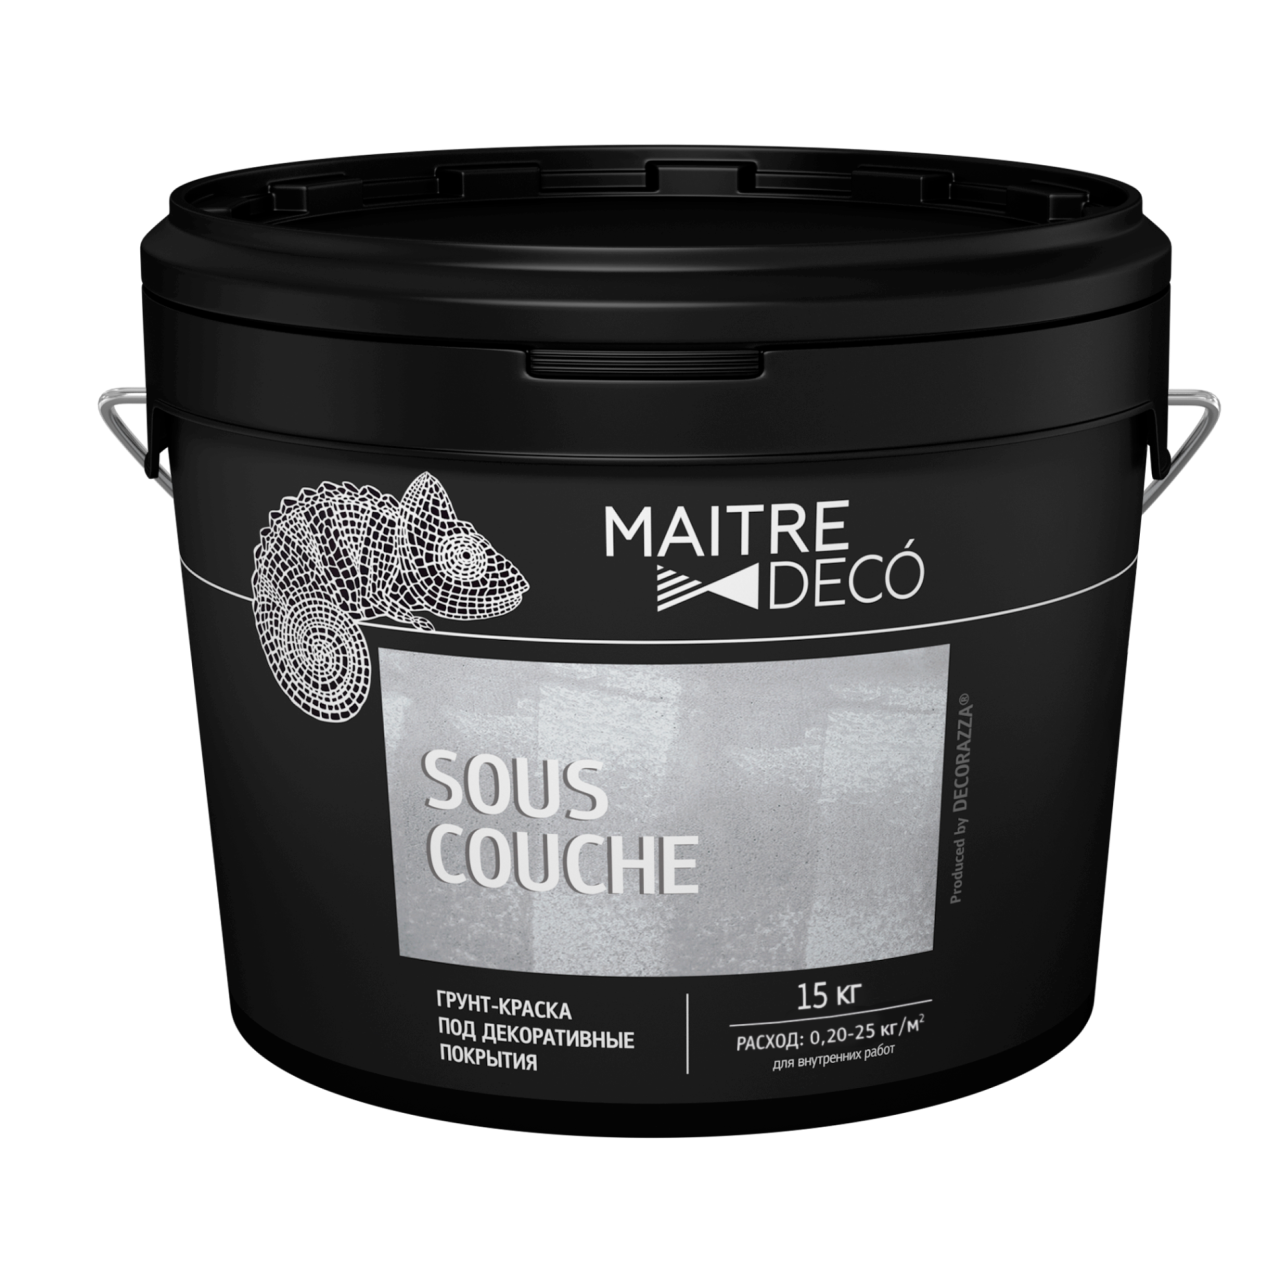 MAITRE DECO® SOUS-COUCHE 15